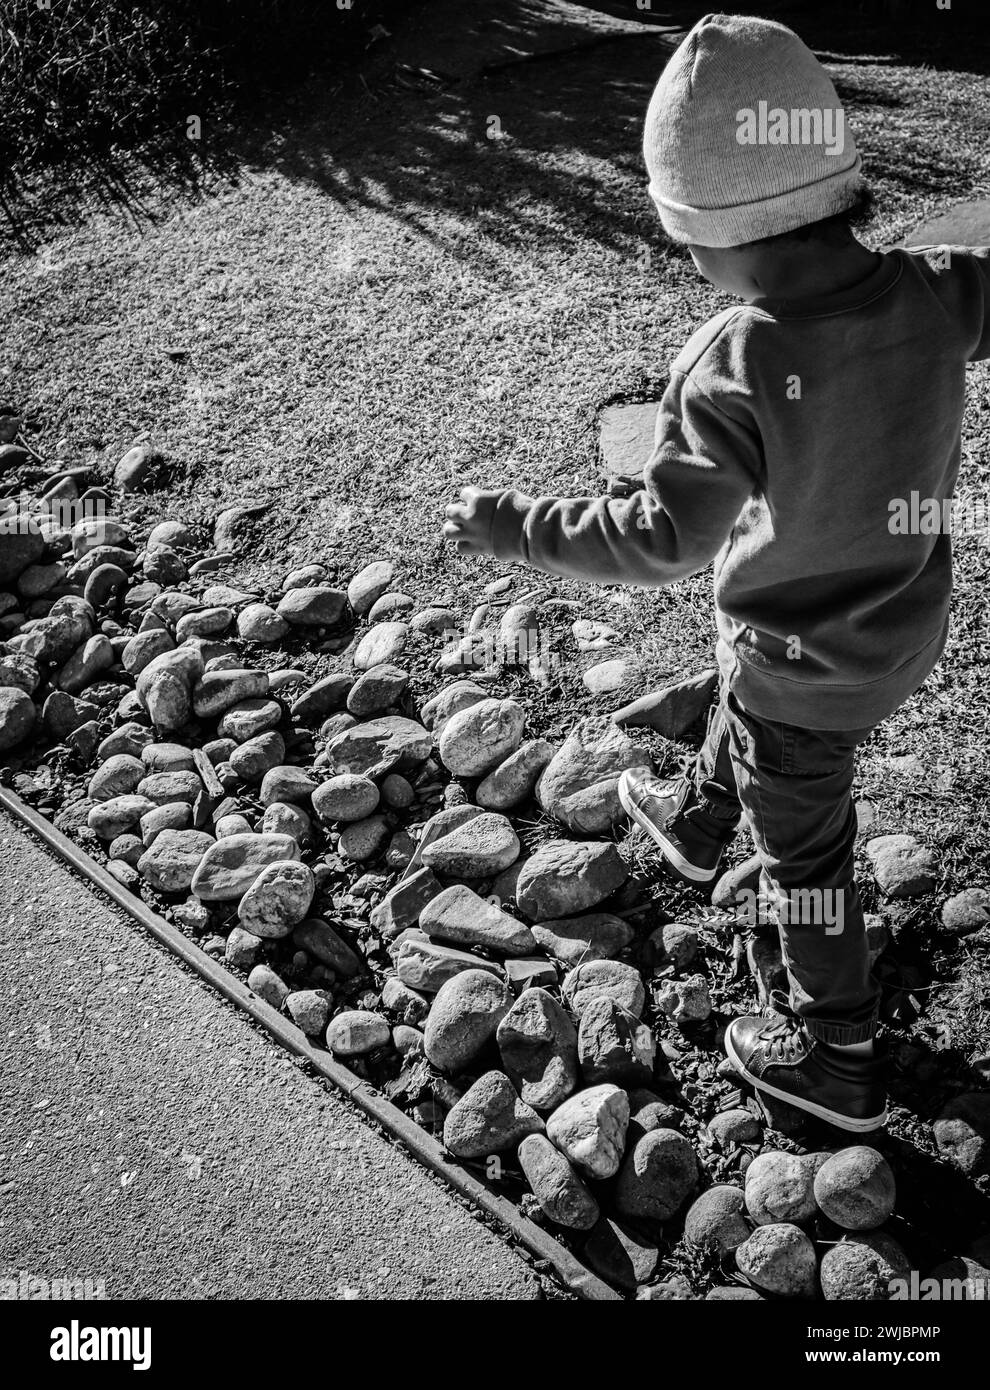 Immagine in bianco e nero di un bambino che esplora con gioia un giardino roccioso Foto Stock